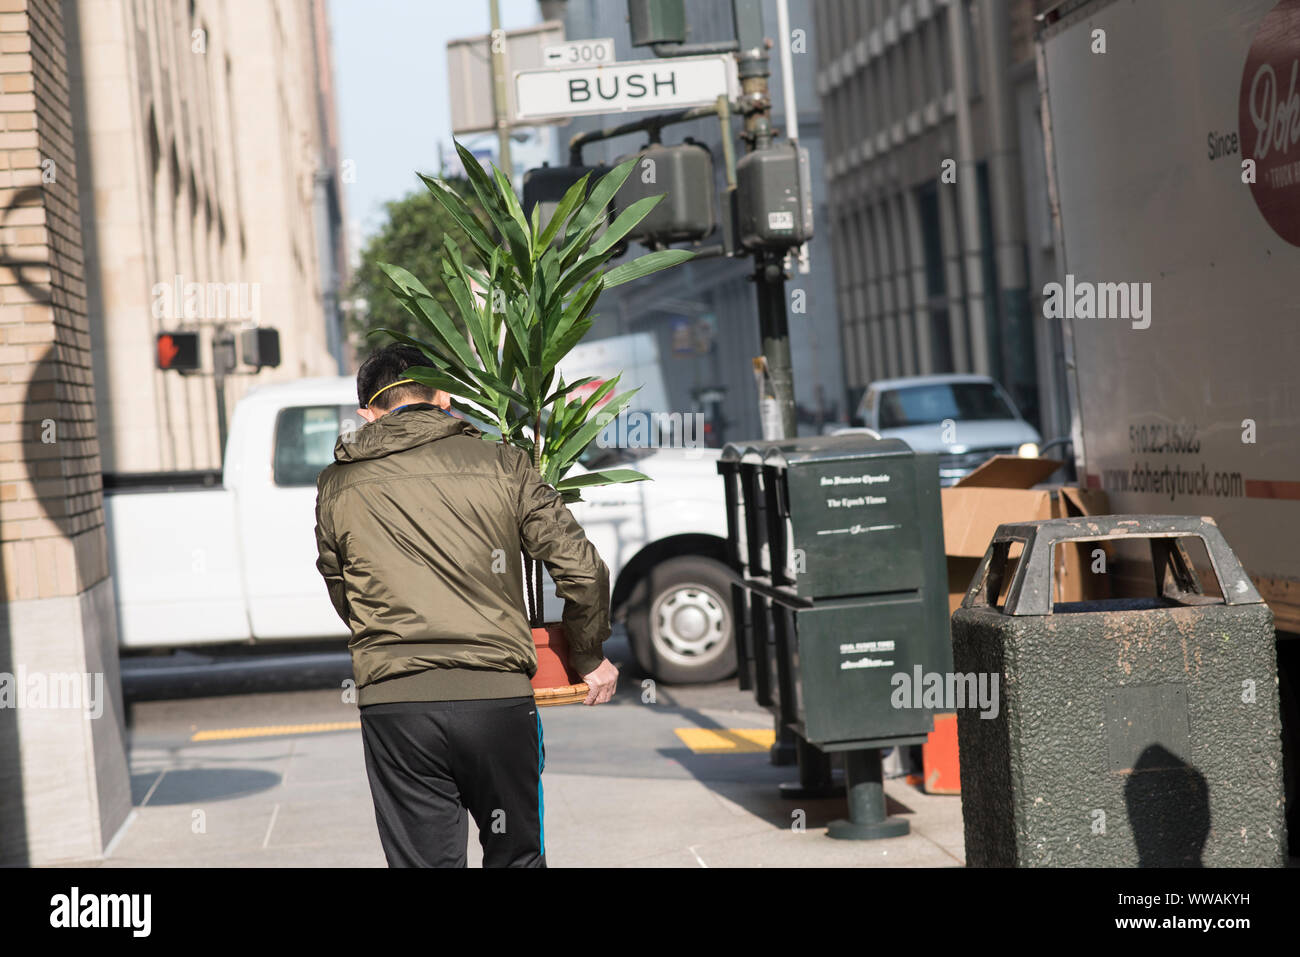 San Francisco, Kalifornien - 17. November 2018: Ein Mann, der eine buschige pflanze Wanderungen vor der Bush Street im Finanzdistrikt. Stockfoto